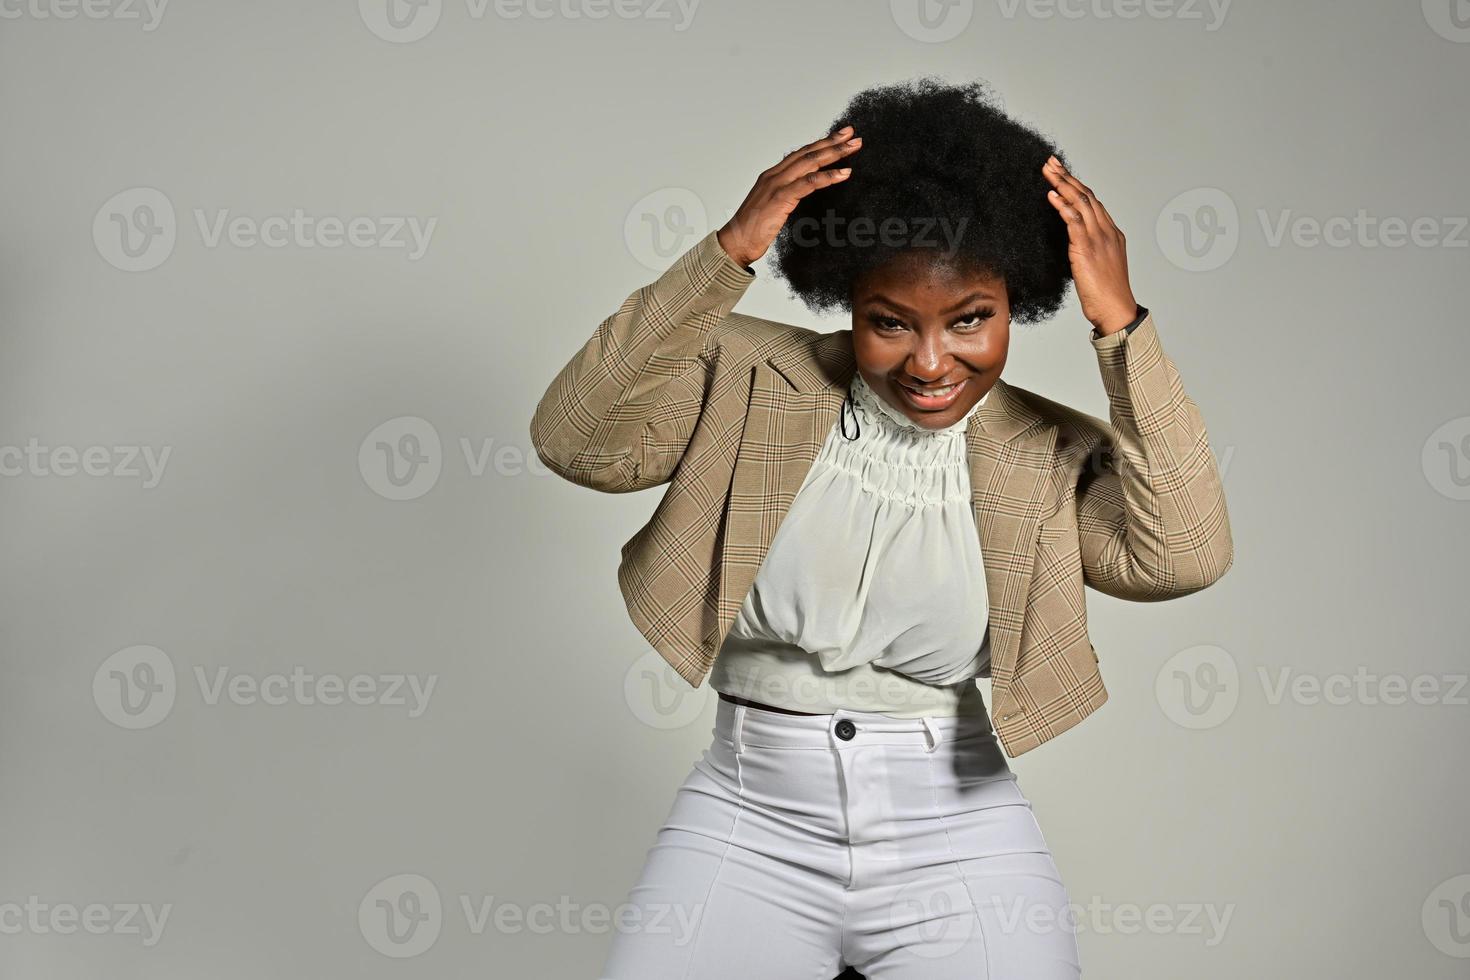 linda mulher afro-americana com acessórios da moda e penteado afro, olhando para a câmera contra um fundo cinza foto